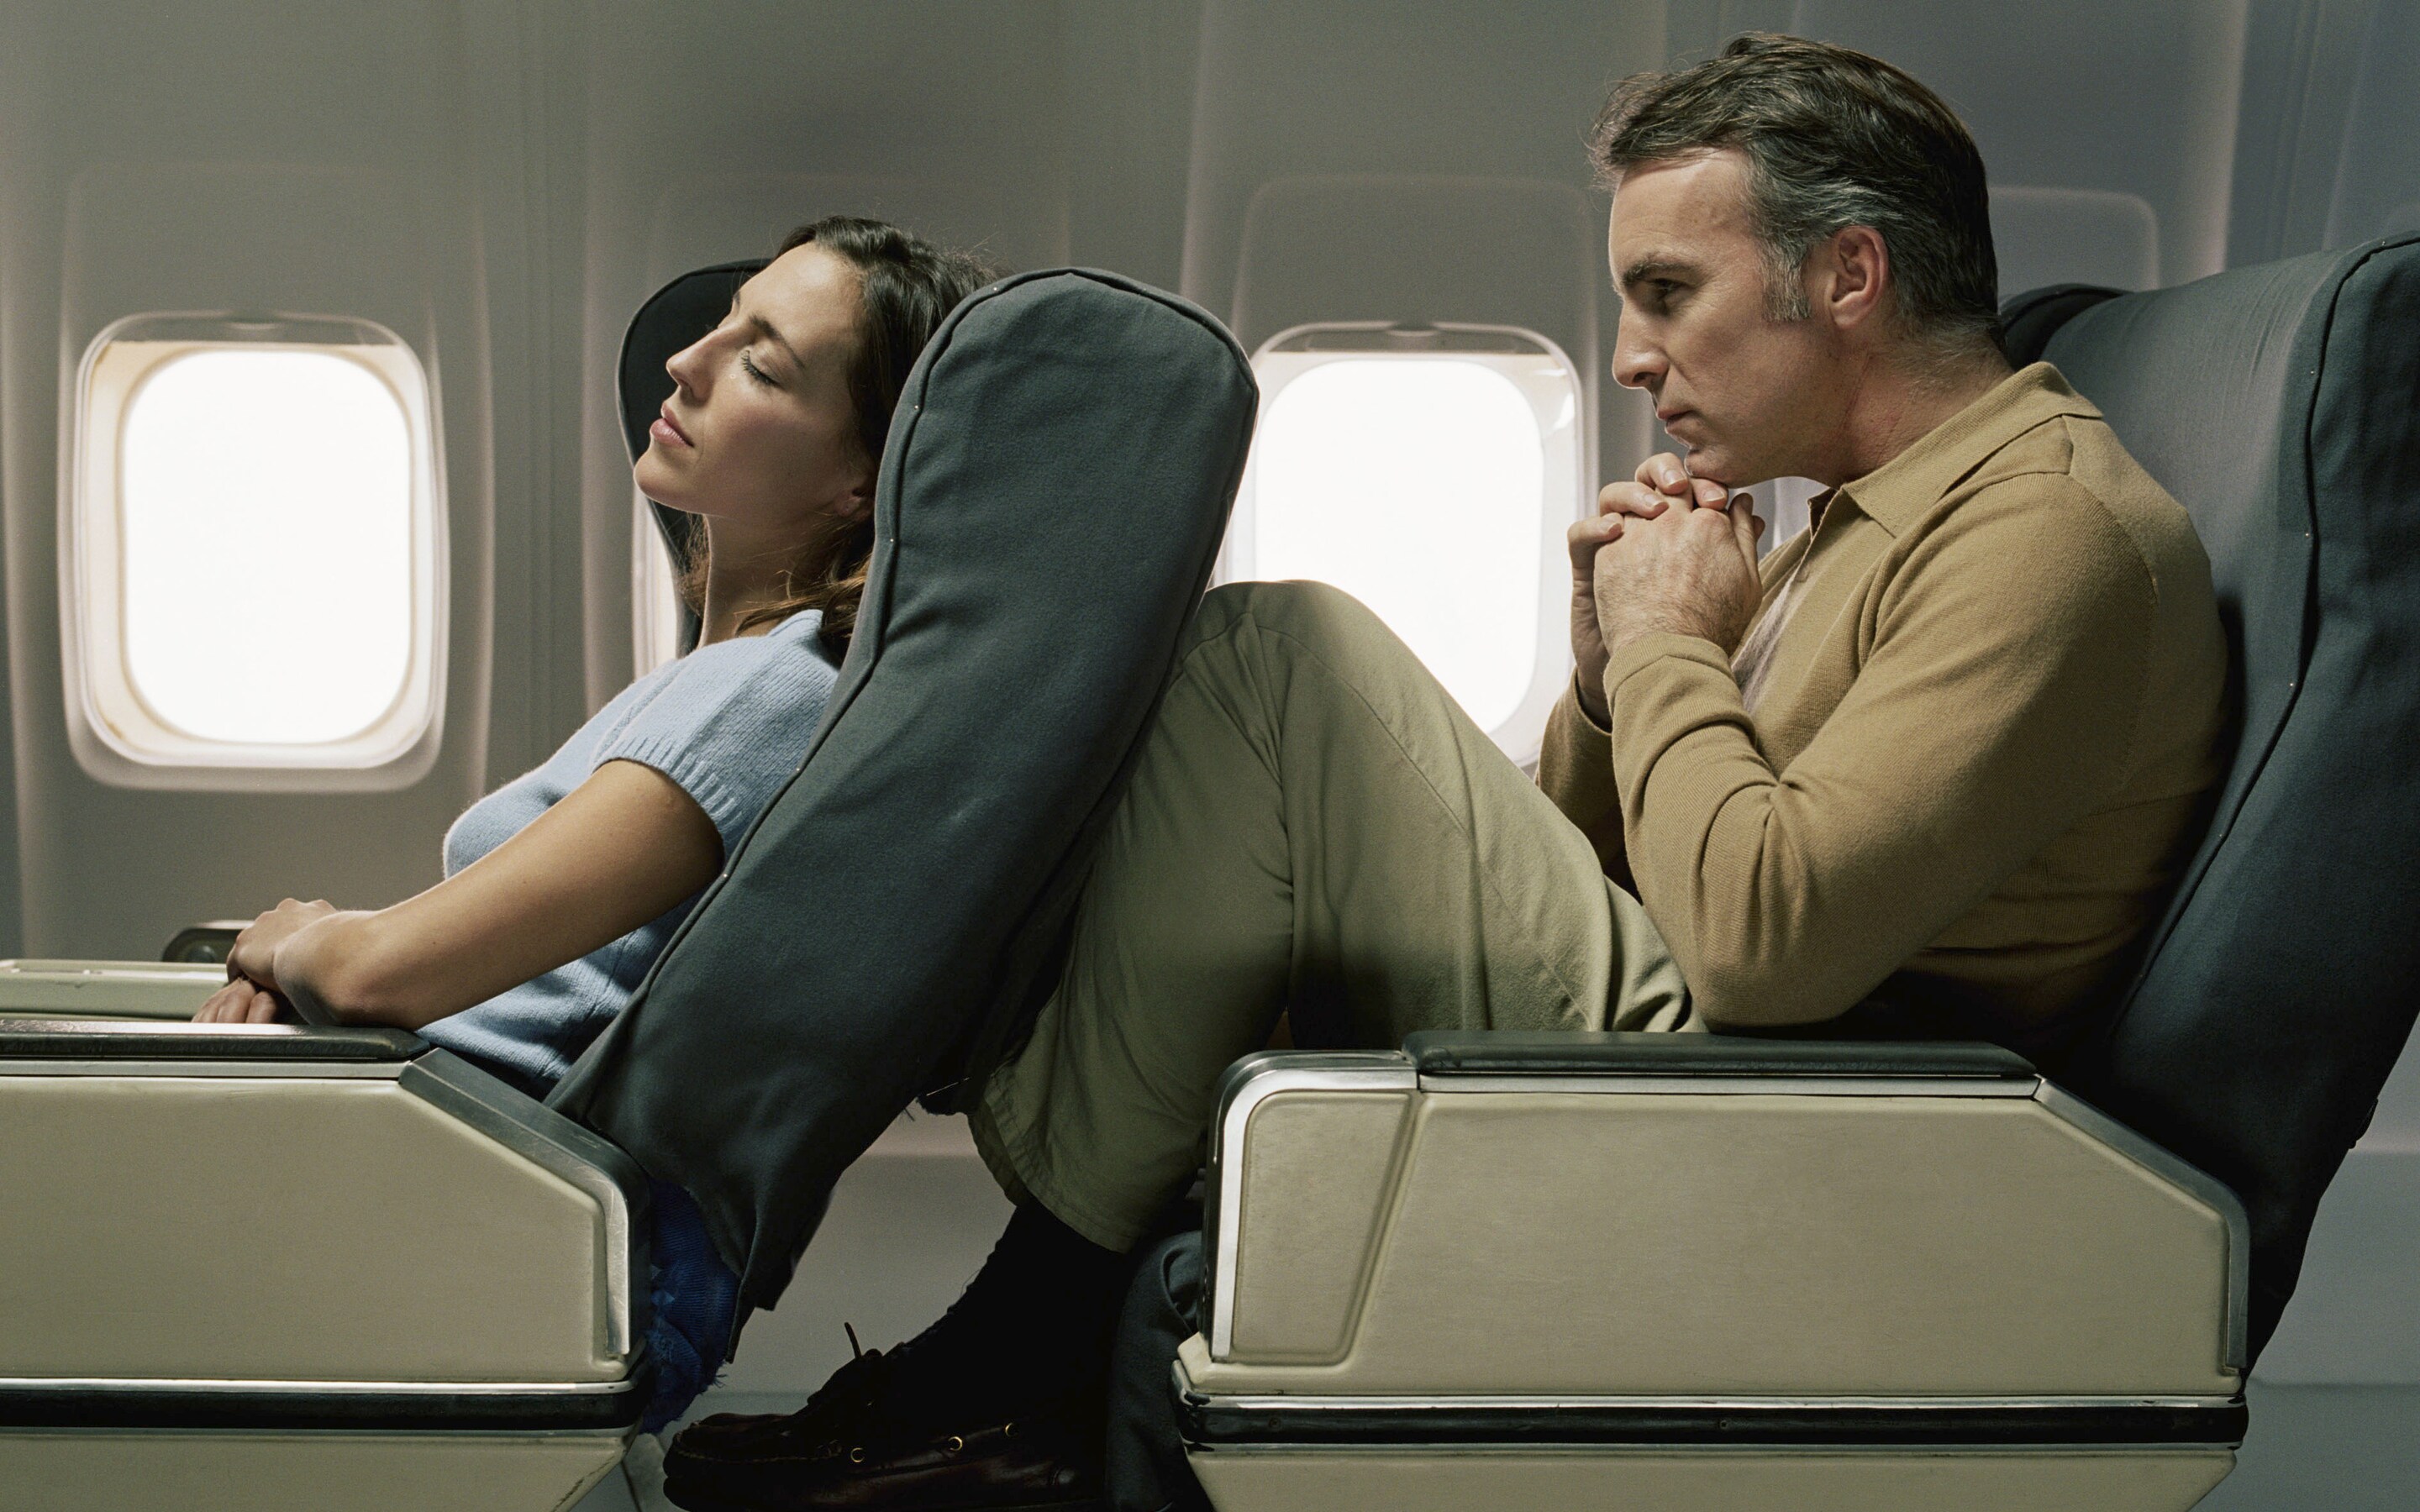 Tranh cãi không hồi kết về chuyện ngả ghế khi đi máy bay